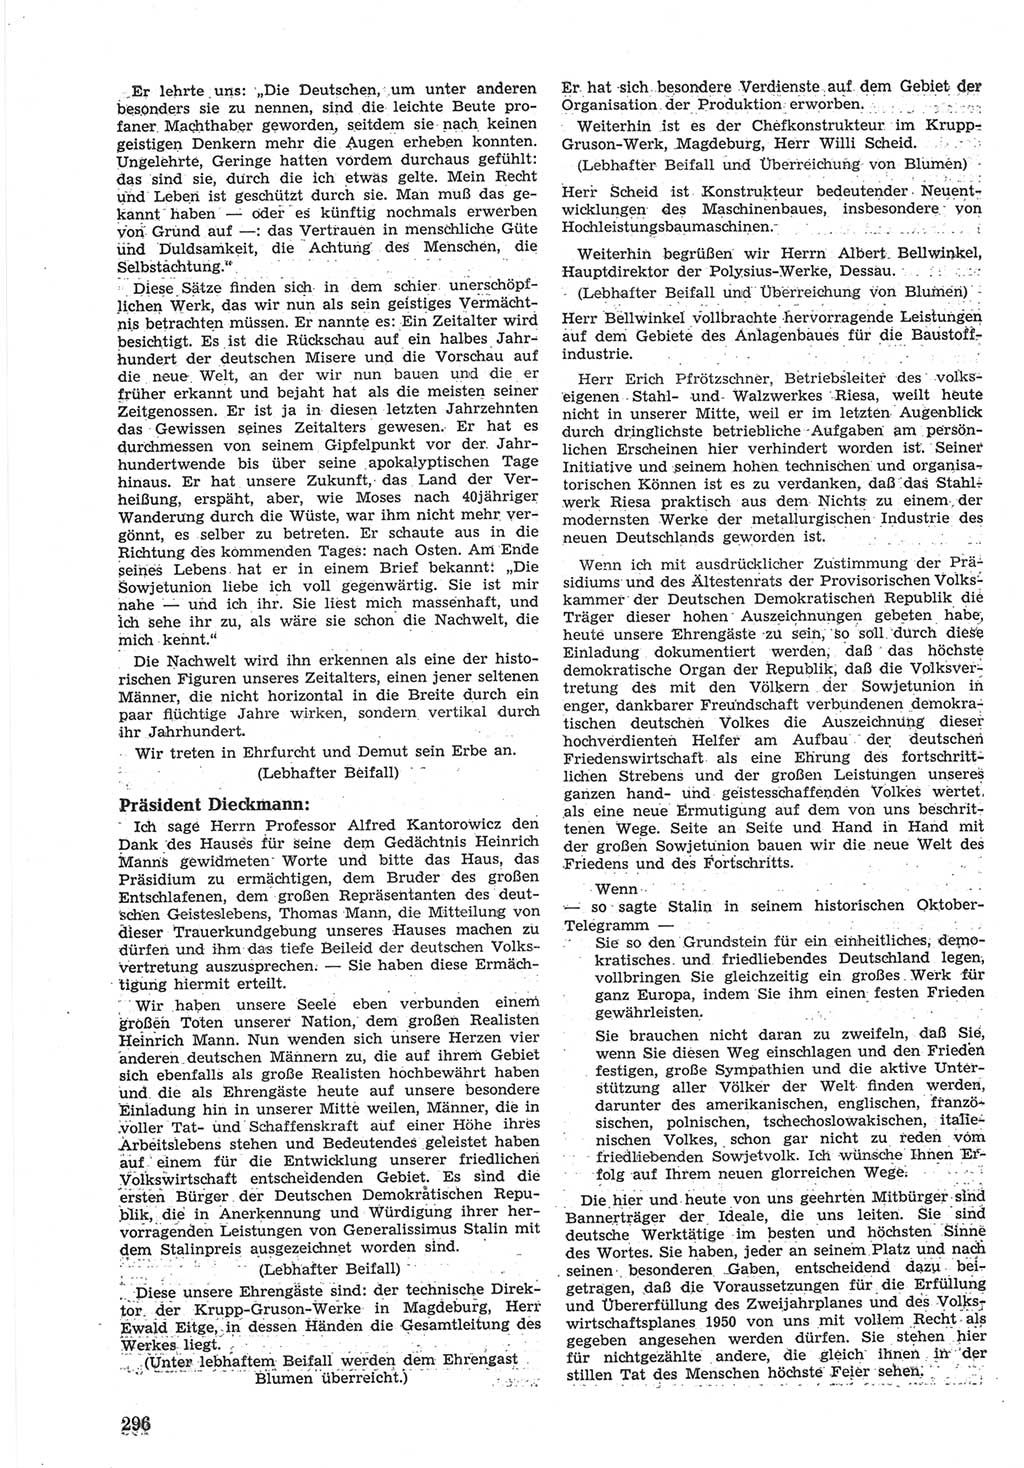 Provisorische Volkskammer (VK) der Deutschen Demokratischen Republik (DDR) 1949-1950, Dokument 310 (Prov. VK DDR 1949-1950, Dok. 310)